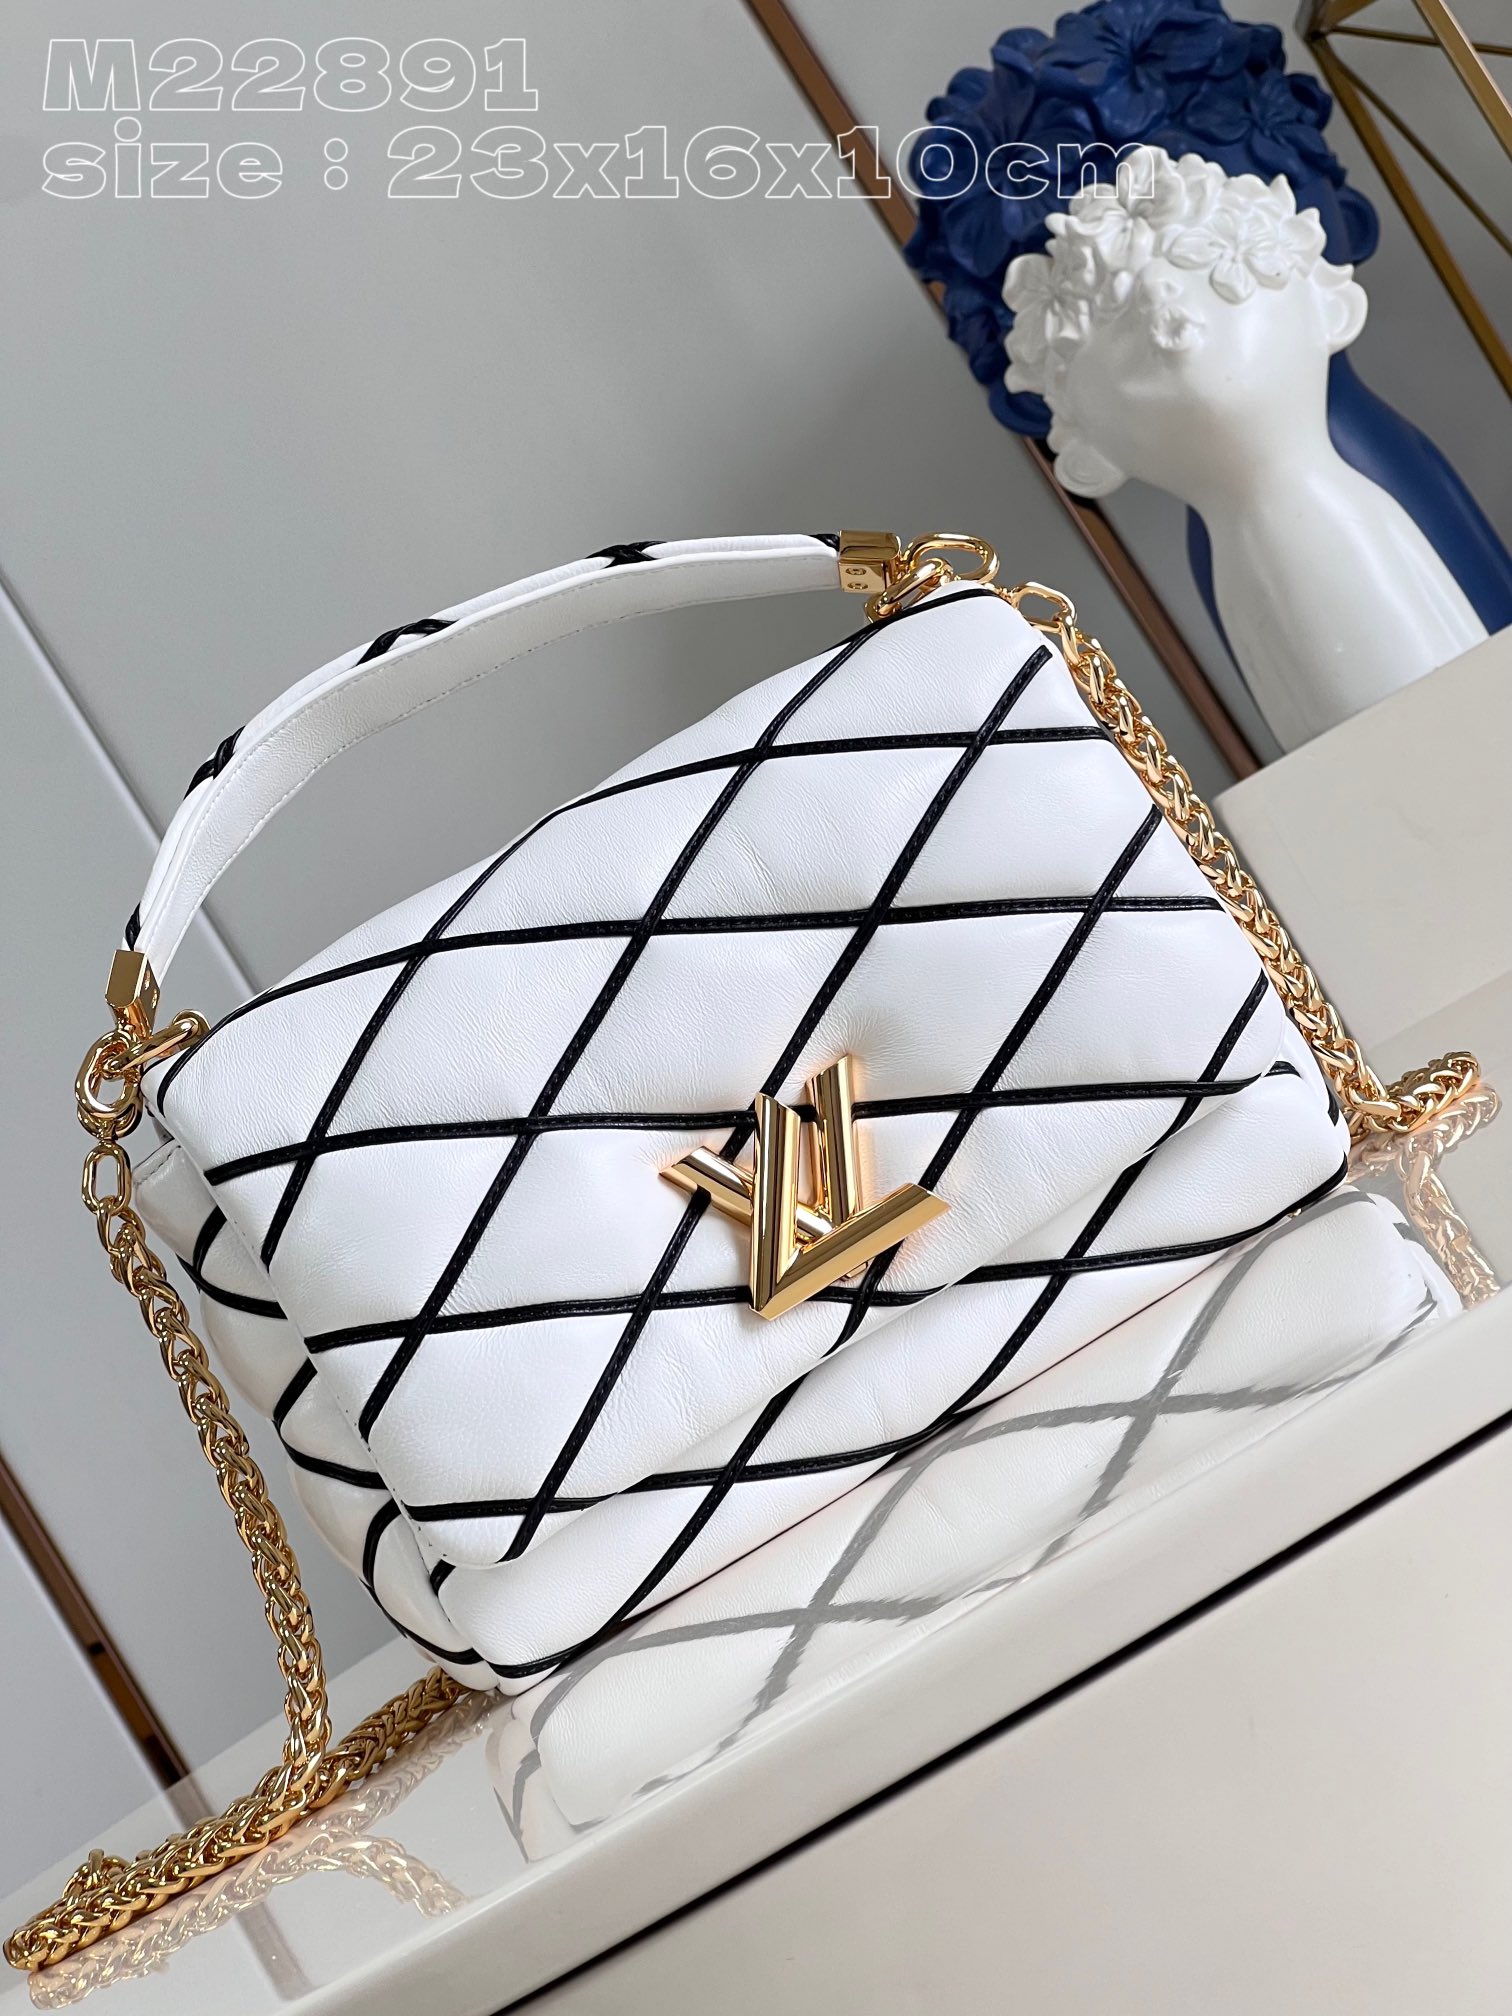 Louis Vuitton Good
 Bags Handbags White Sheepskin LV Twist Chains M22891